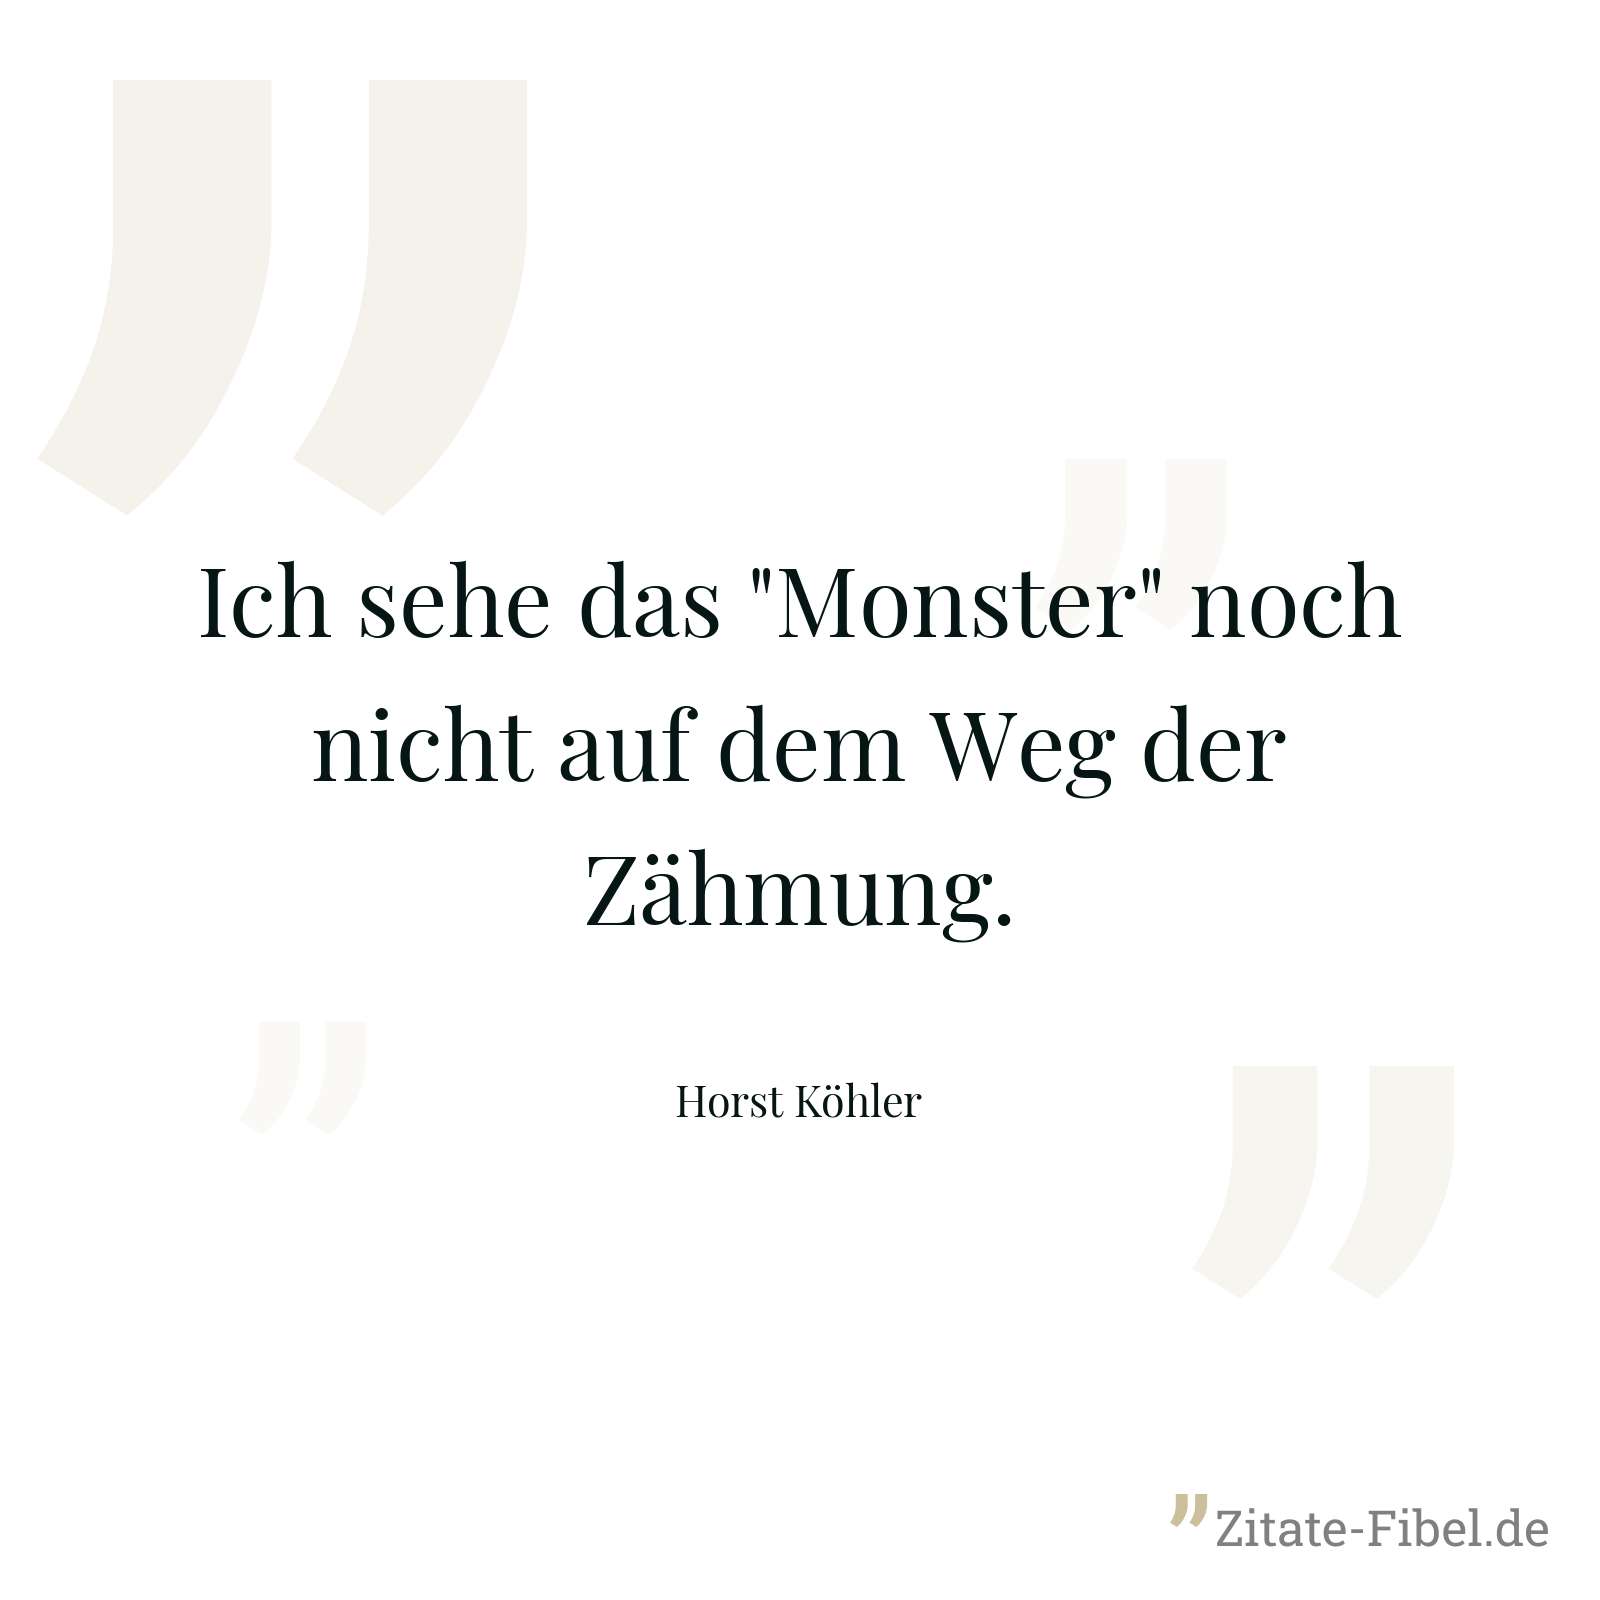 Ich sehe das "Monster" noch nicht auf dem Weg der Zähmung. - Horst Köhler